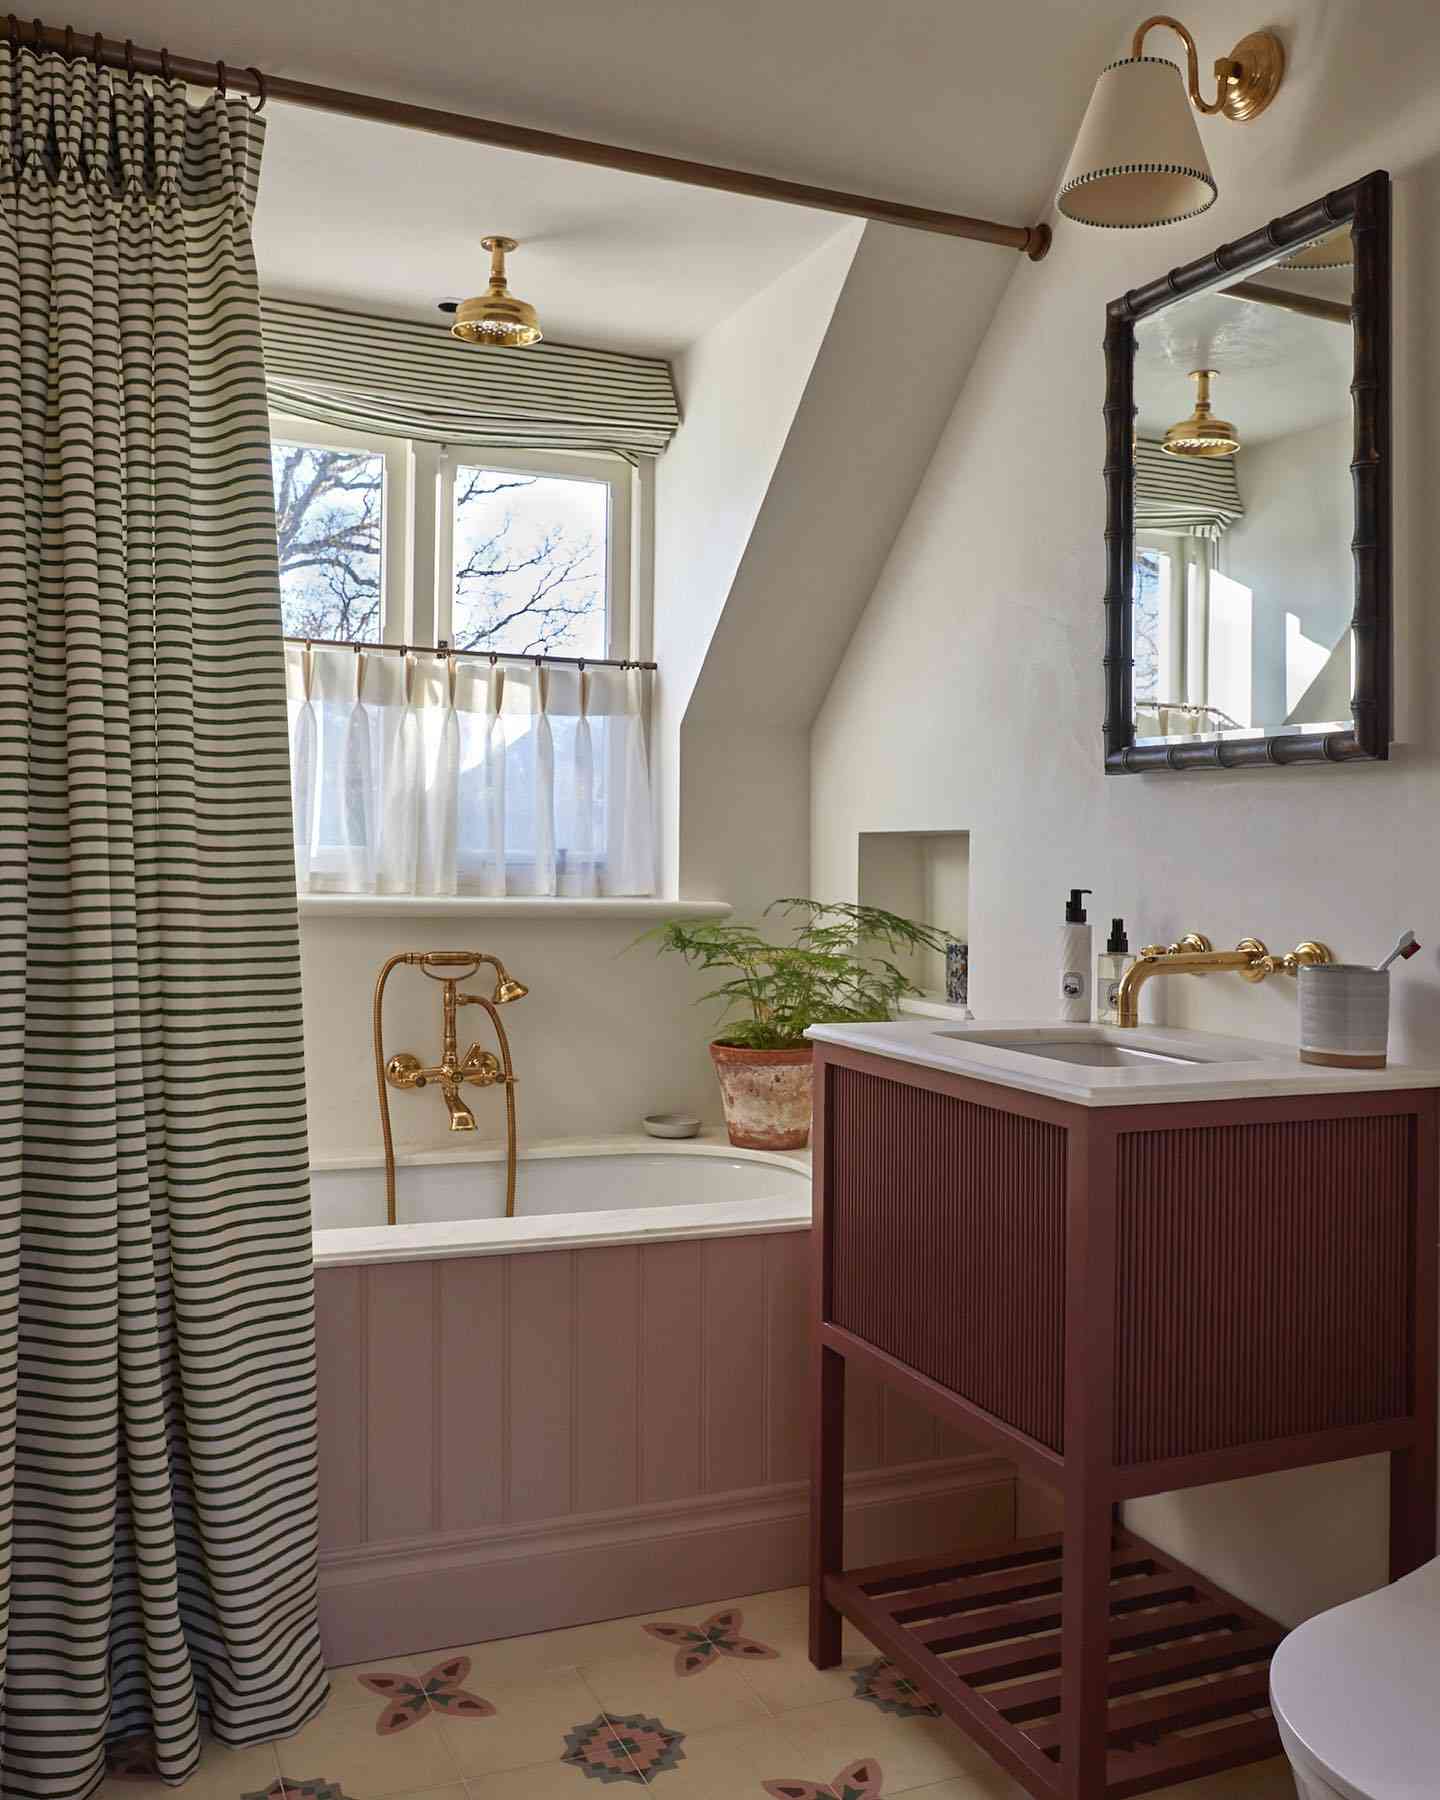 Salle de bain avec accents dorés et rideau de douche rayé